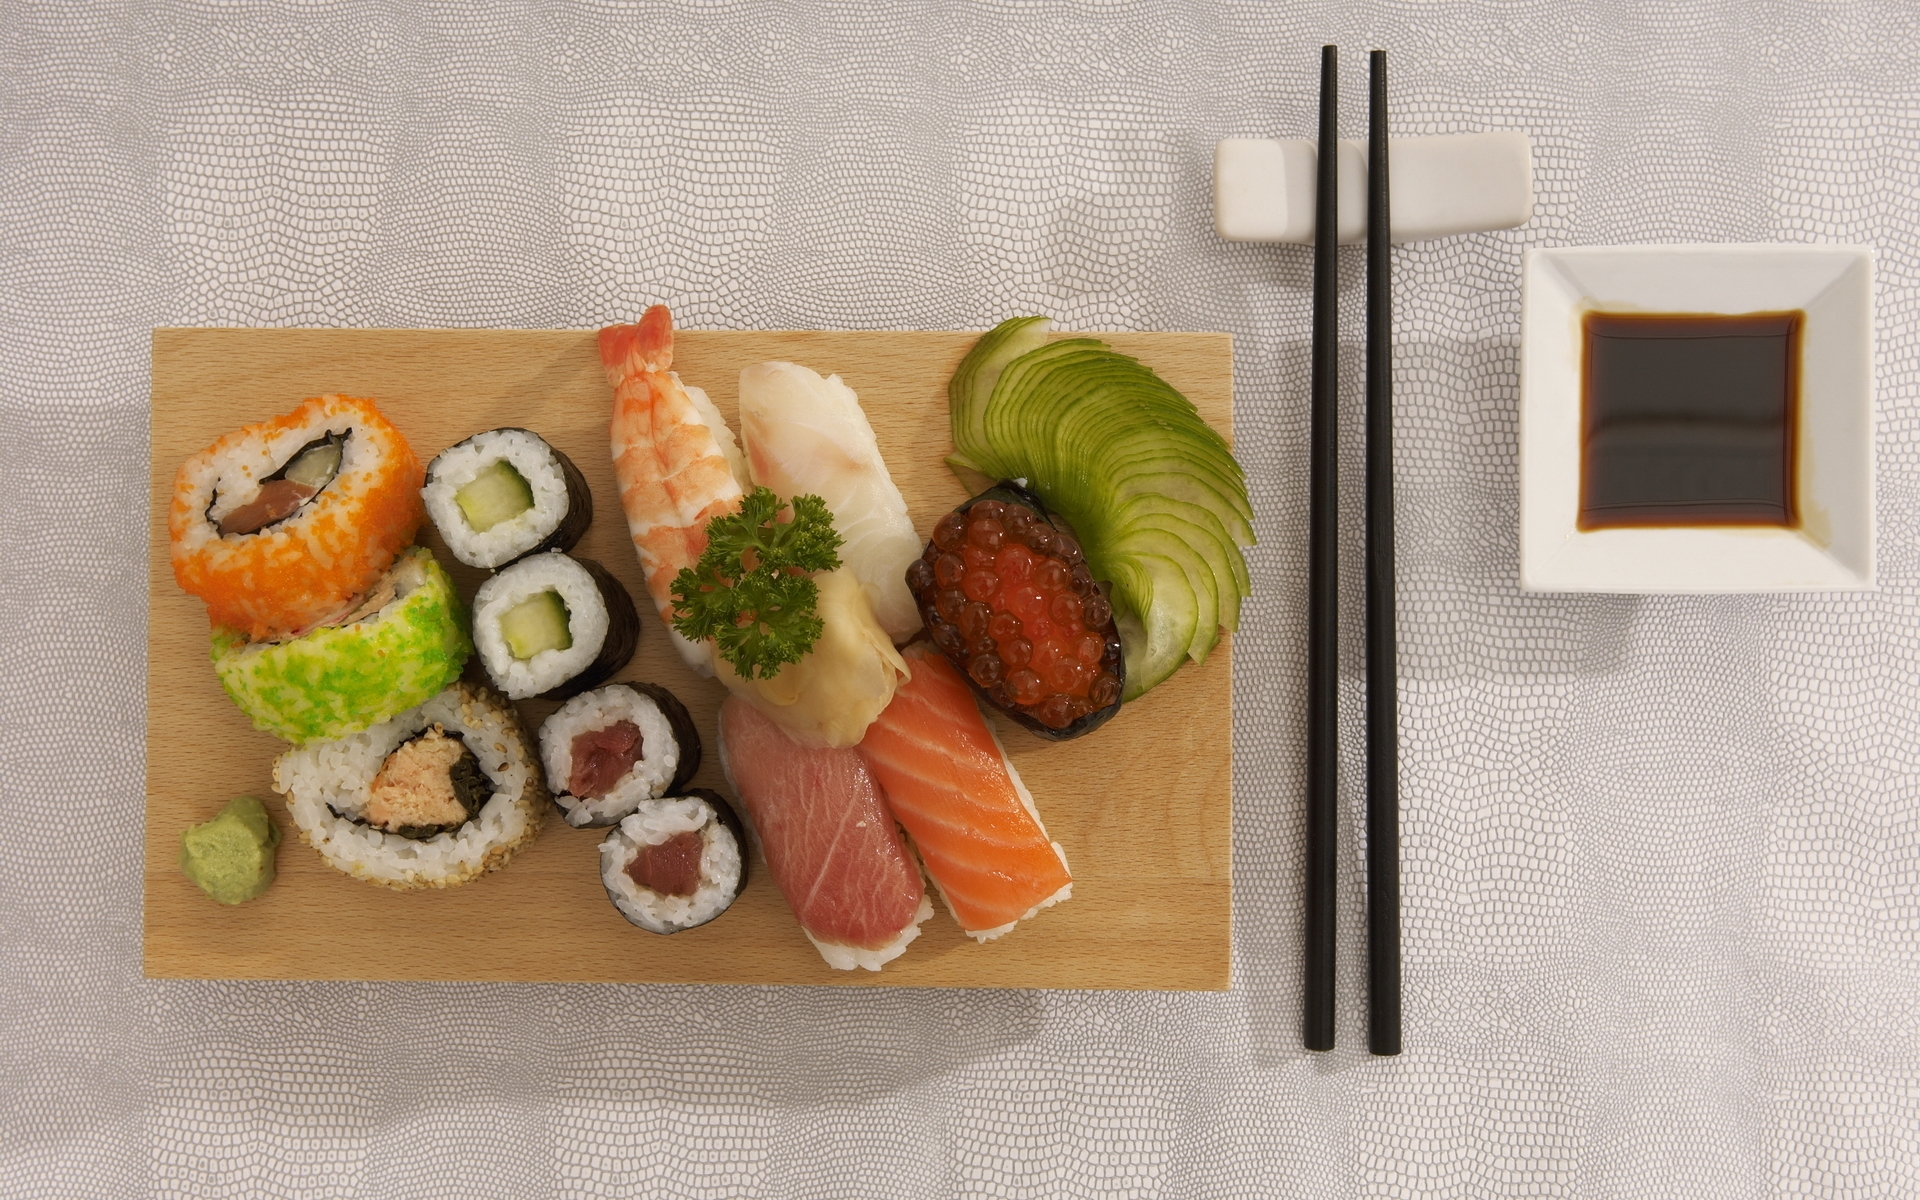 Картинки еды, суши, роллы, морепродукты, красная икра, вкусно, японская еда, палочки для еды, соевый соус фото и обои на рабочий стол